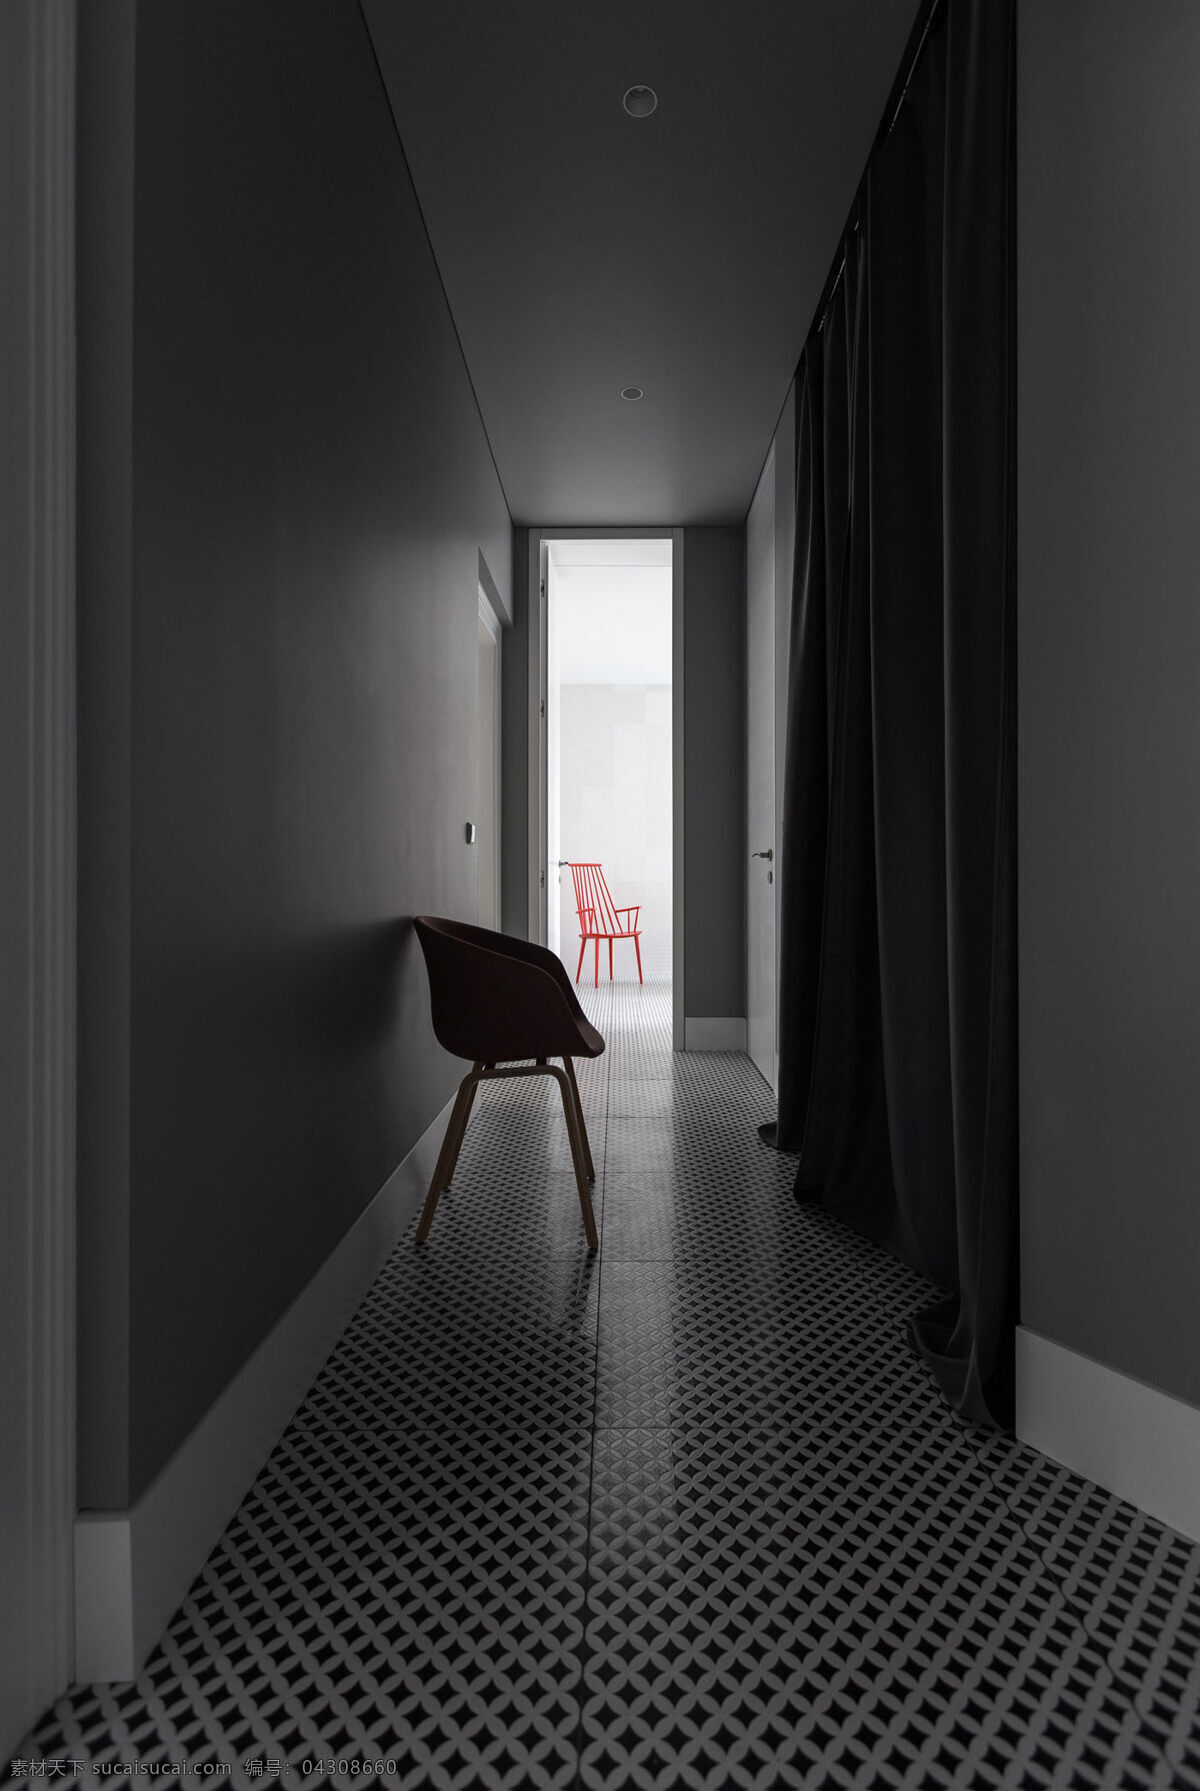 简约 走廊 椅子 装修 效果图 方形吊顶 过道 灰色墙壁 入户门